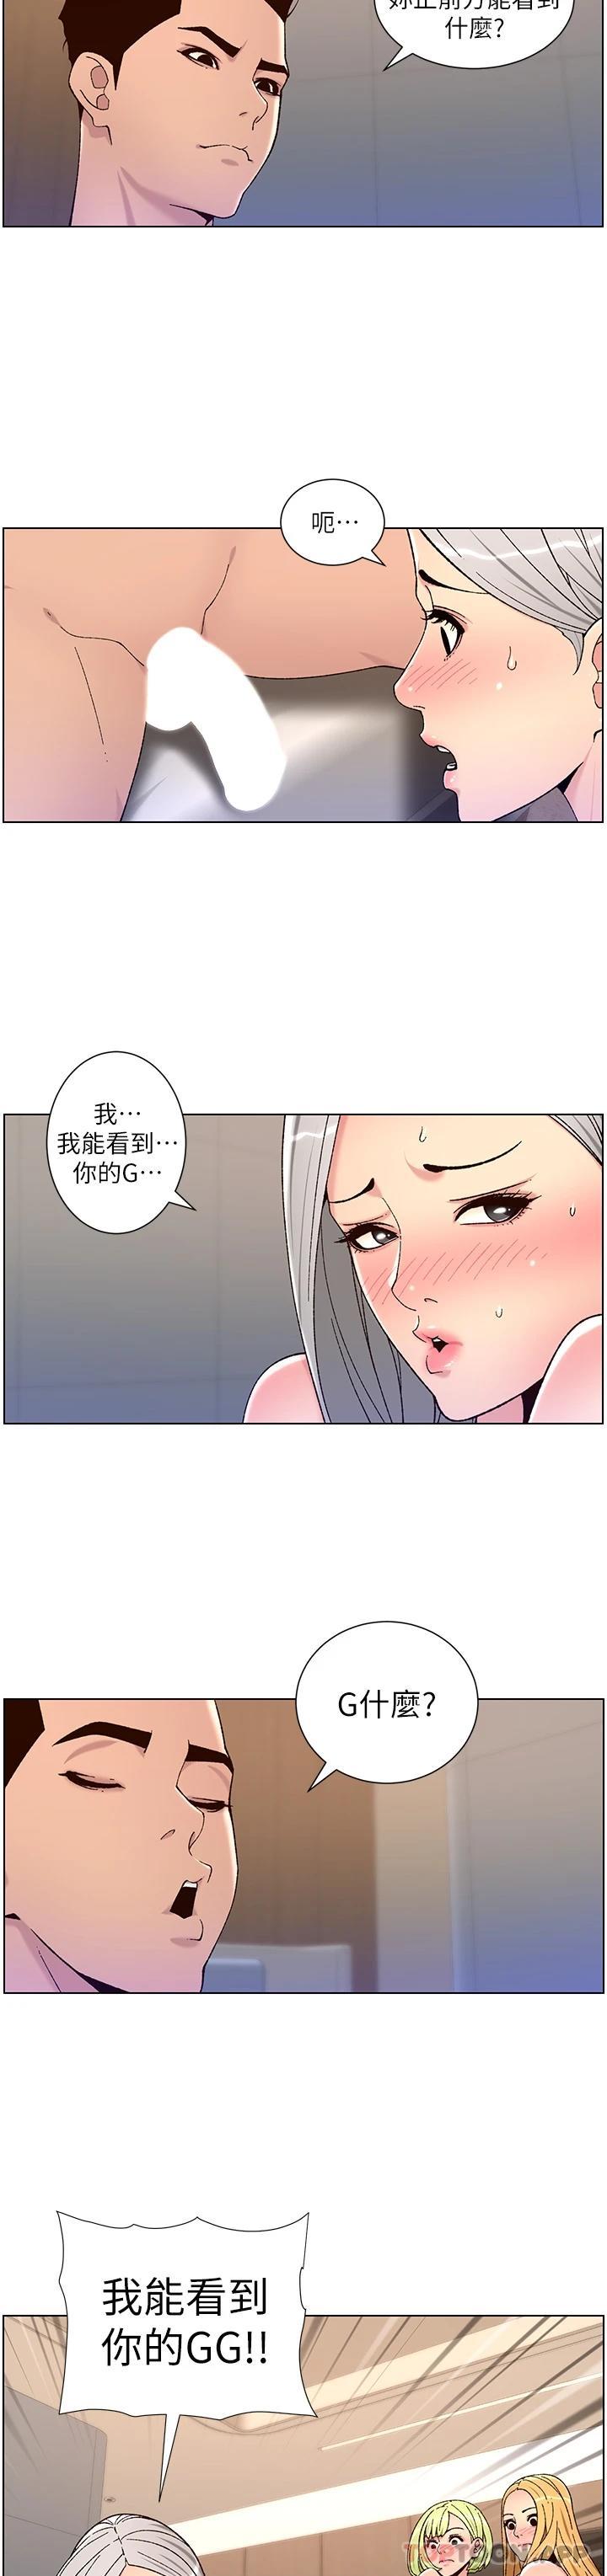 韩国污漫画 帝王App 第62话-吞下老板的巨屌 13